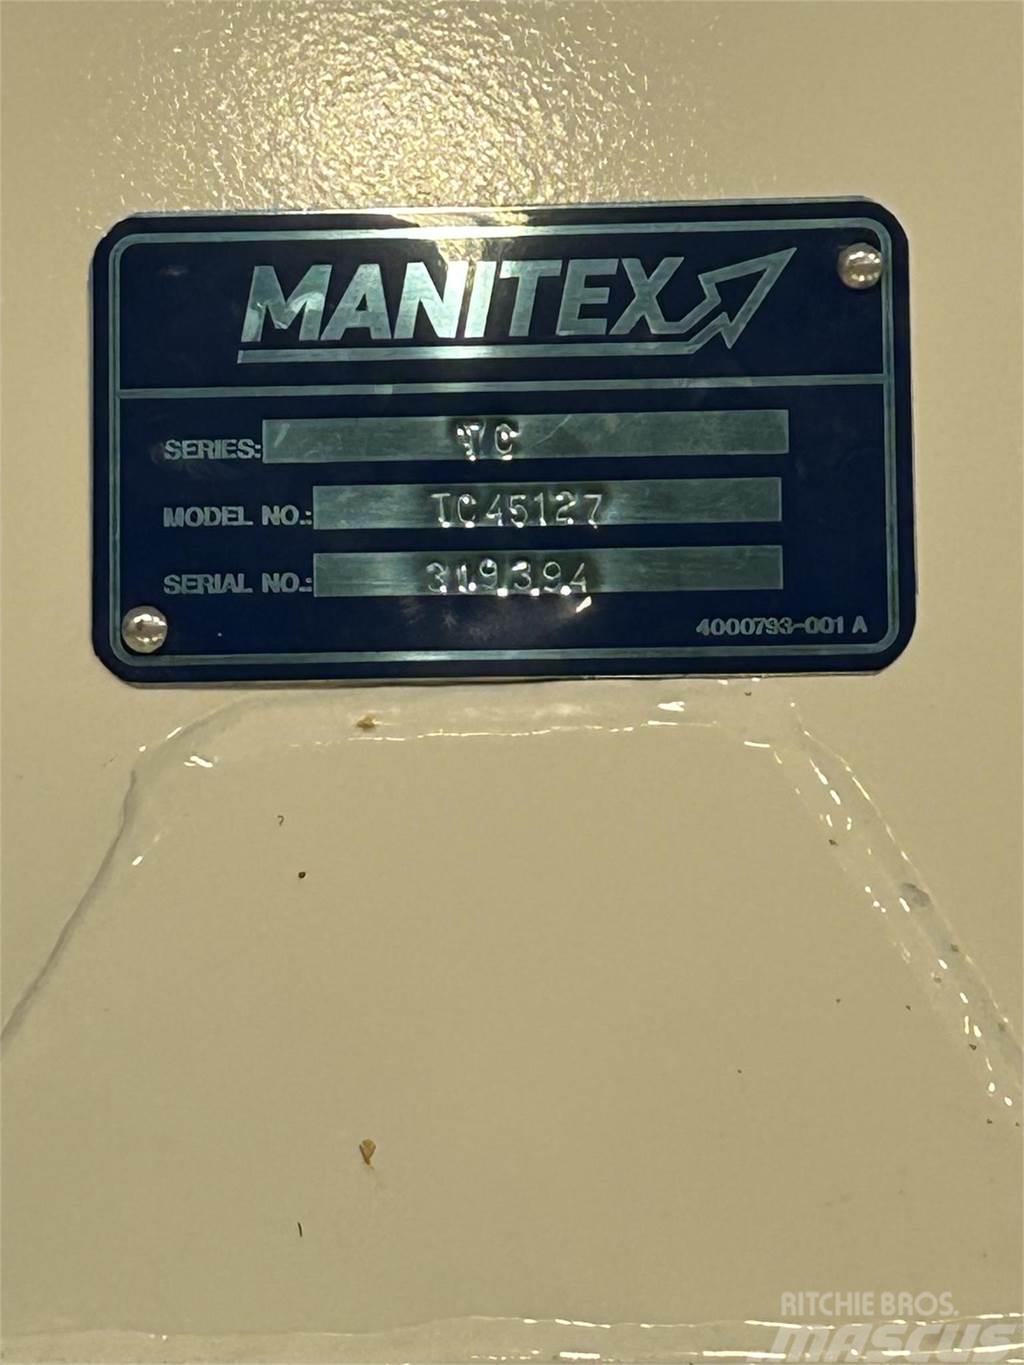 Manitex TC45127 Lastbil med kran